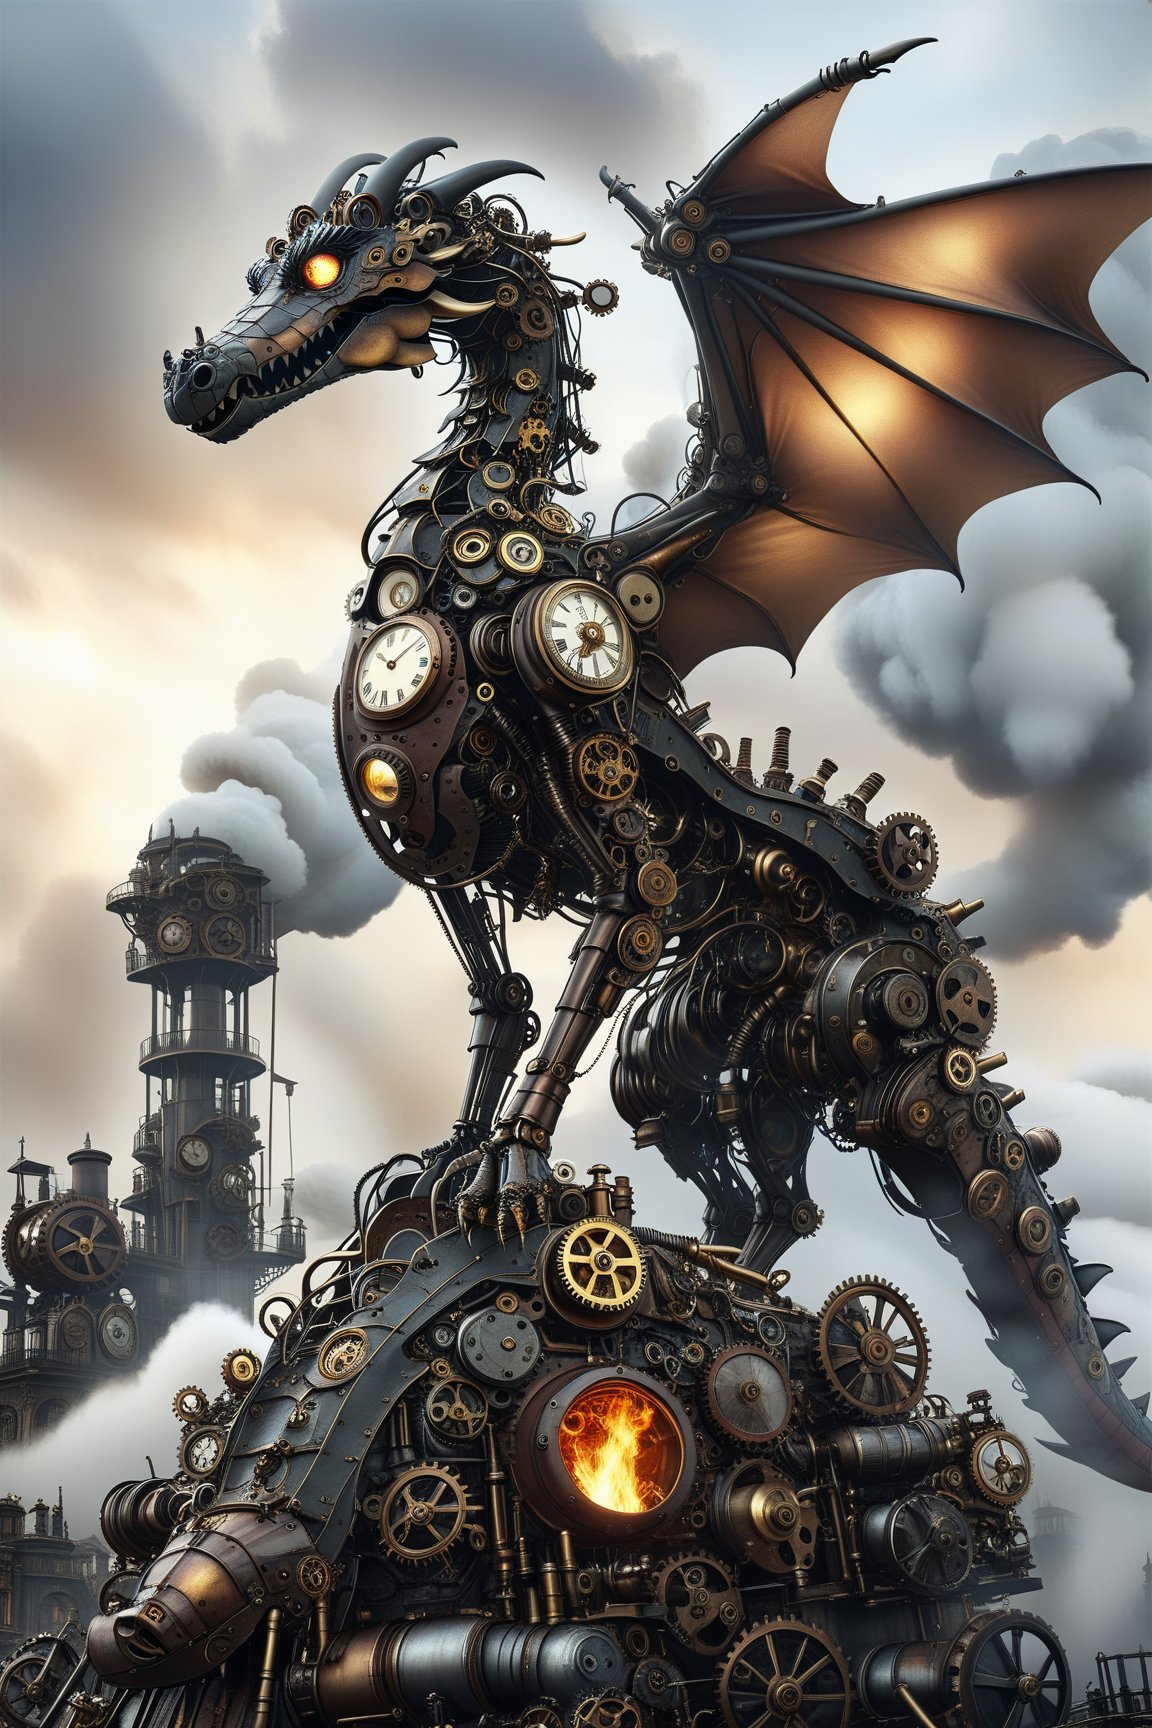 create a beautiful magical steampunk fantasy scene where you can evidence Un dragón mecánico exhalando nubes de vapor y fuego, volando sobre un paisaje urbano steampunk..Mechanical,DonMSt34mPXL